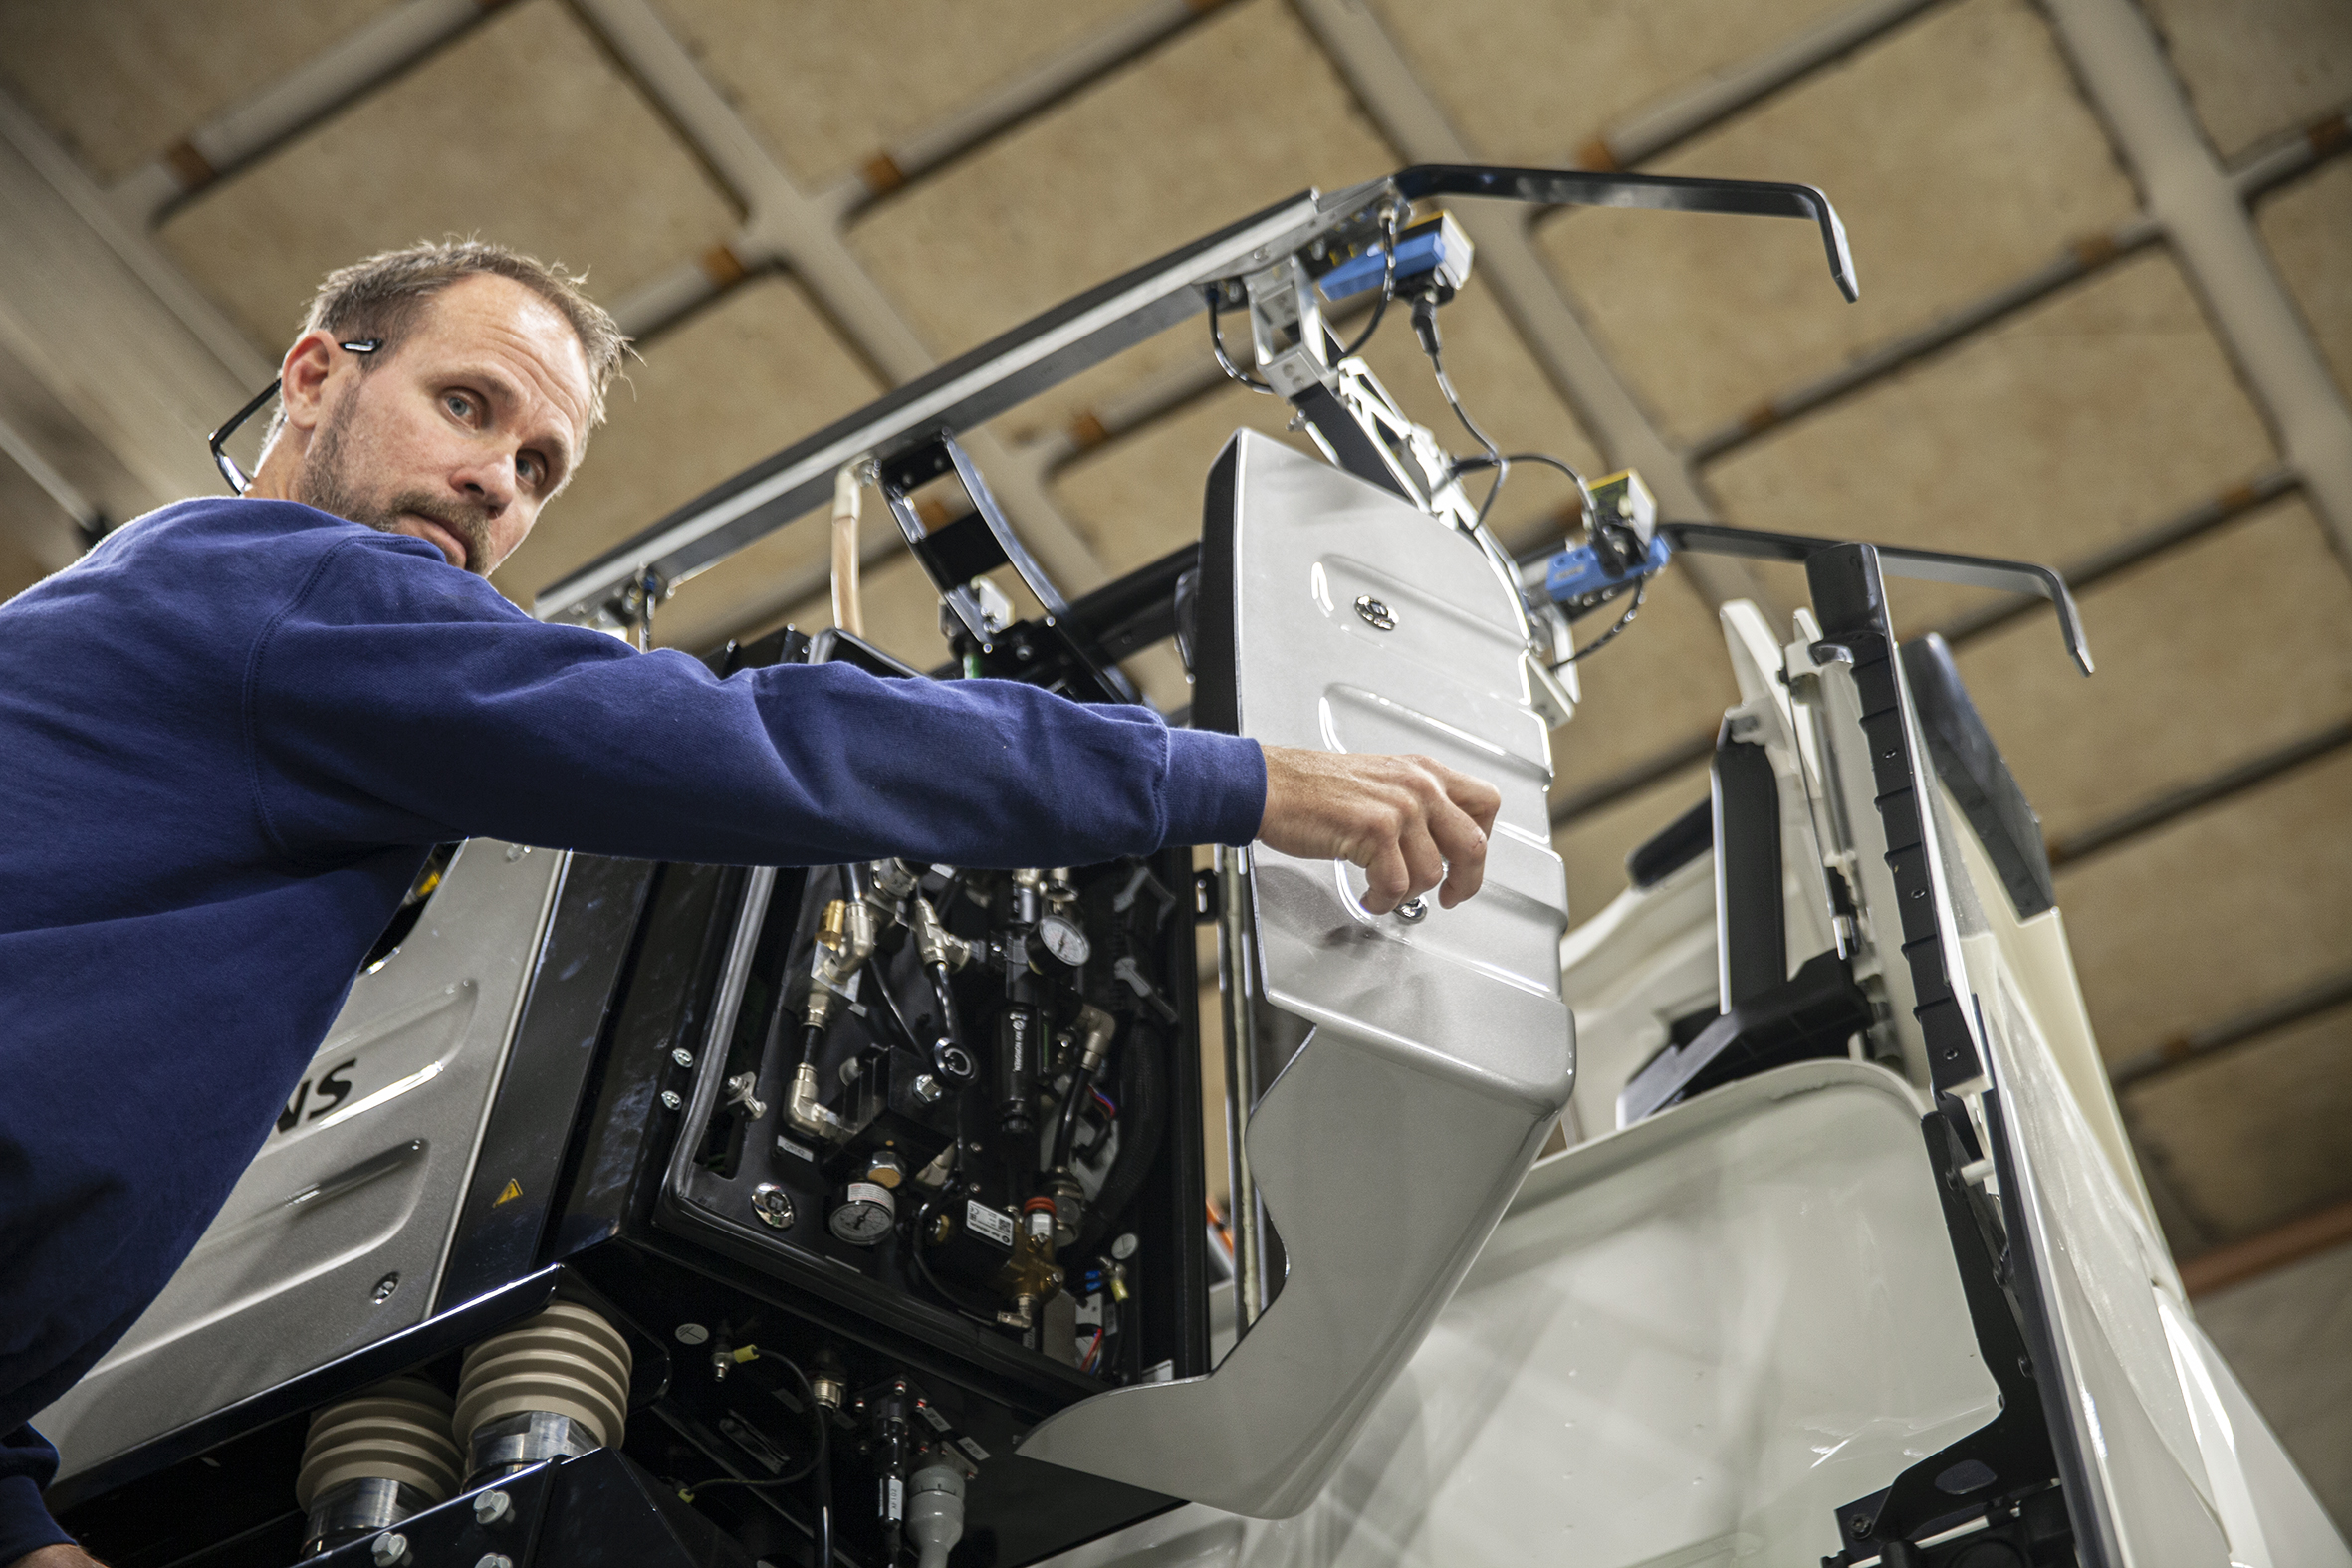 Högst upp på hytten. Mikael Rinne monterar utrustning till trailerdragaren som kommer att testas på elvägar i Tyskland.